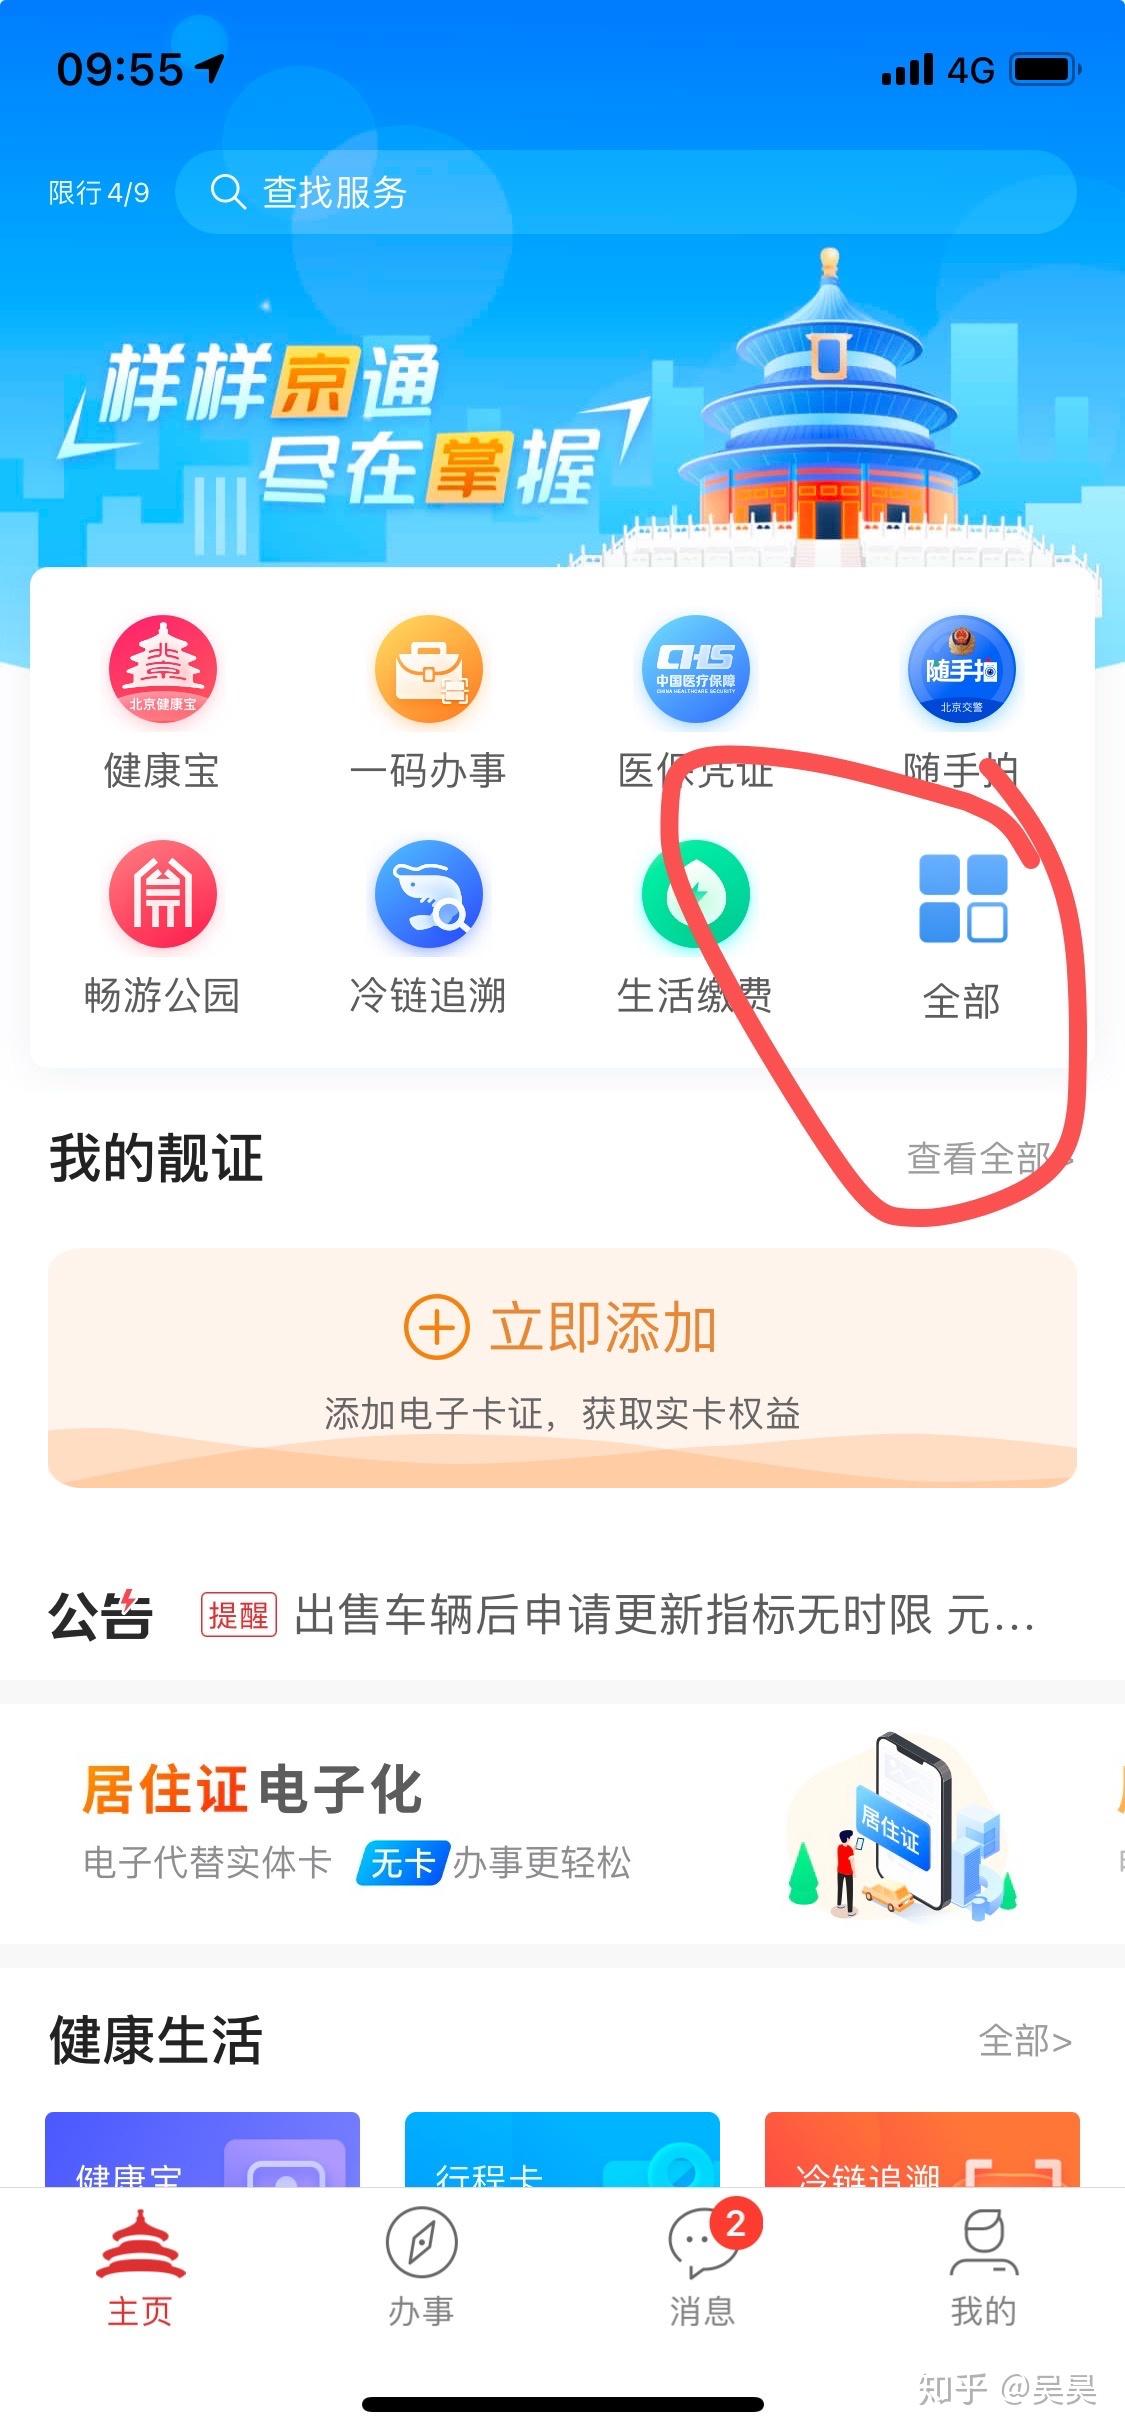 用北京通App如何查询自己名下房产?步骤